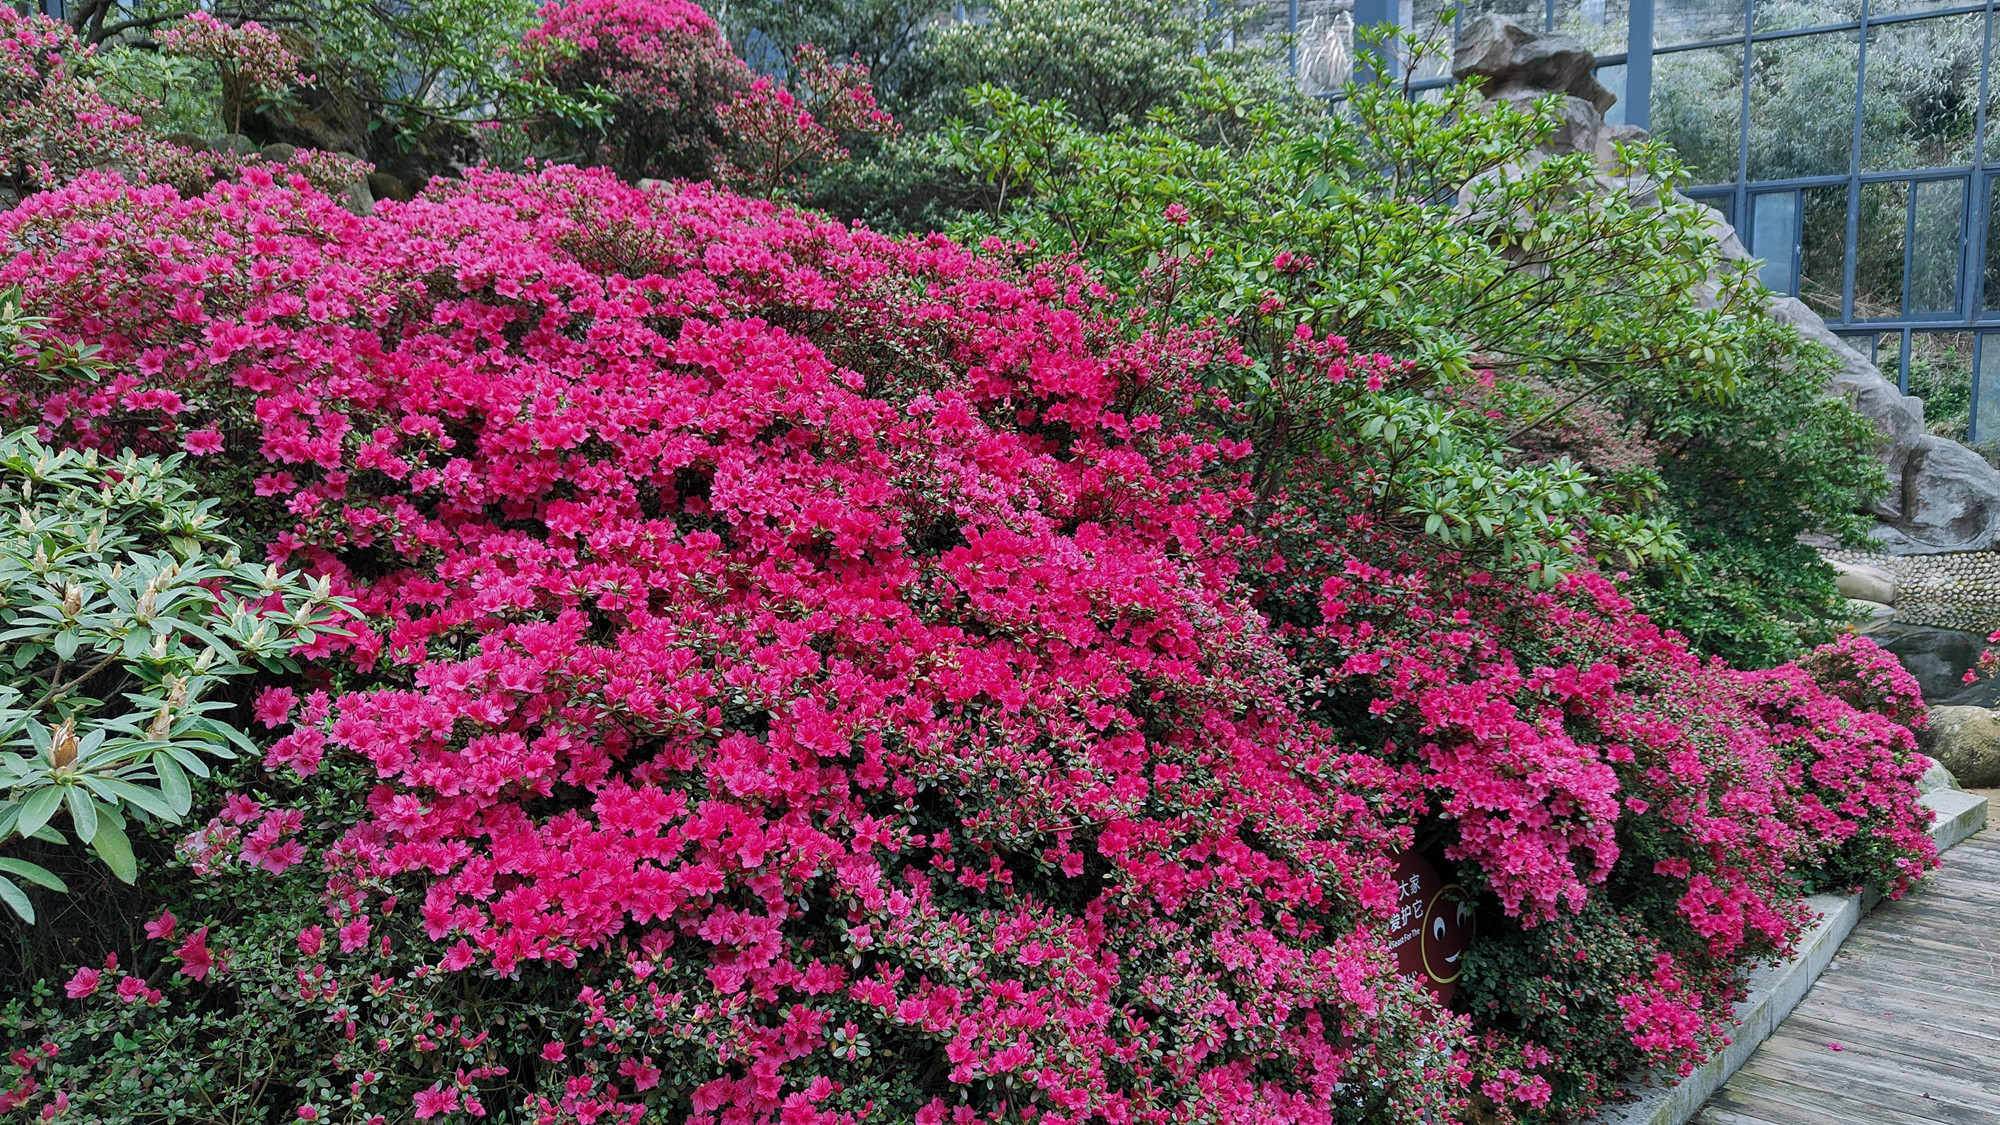 ツツジの花が咲いて、仙境のように美しい！早く亀峰山観光地のツツジ博覧園に来てカードを打ちましょう。